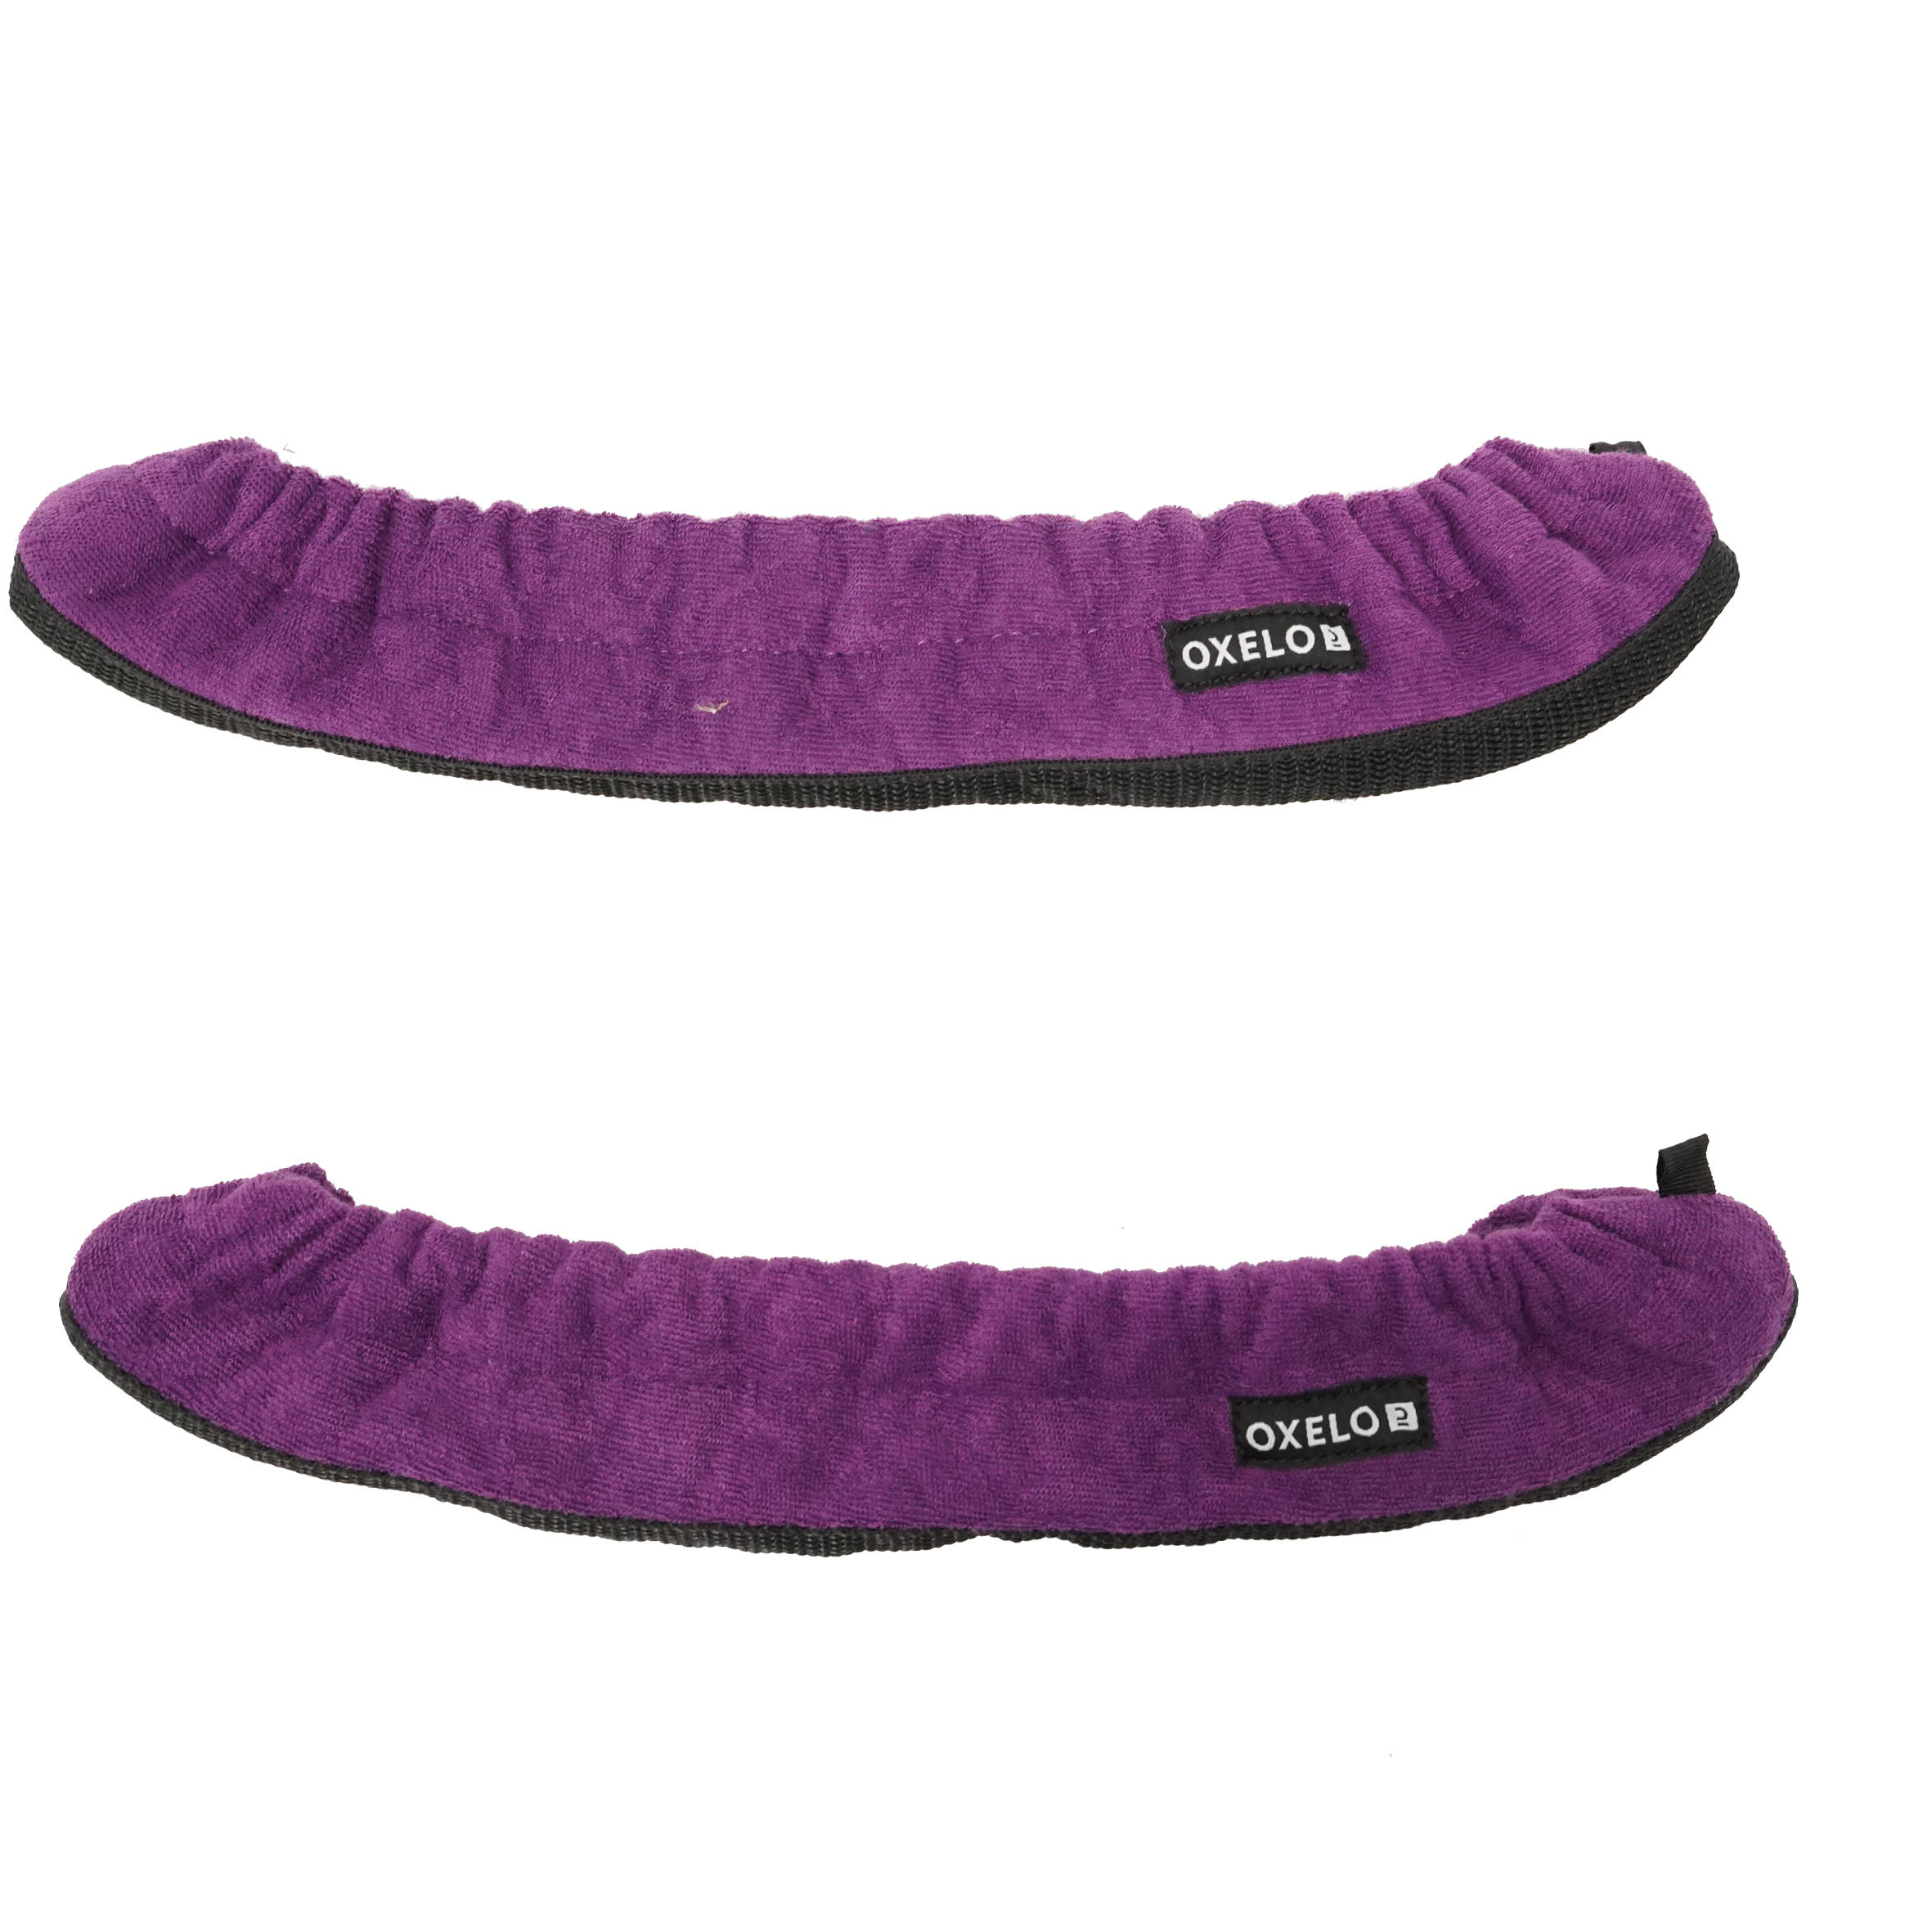 OXELO Kufenschoner für Schlittschuhe violett